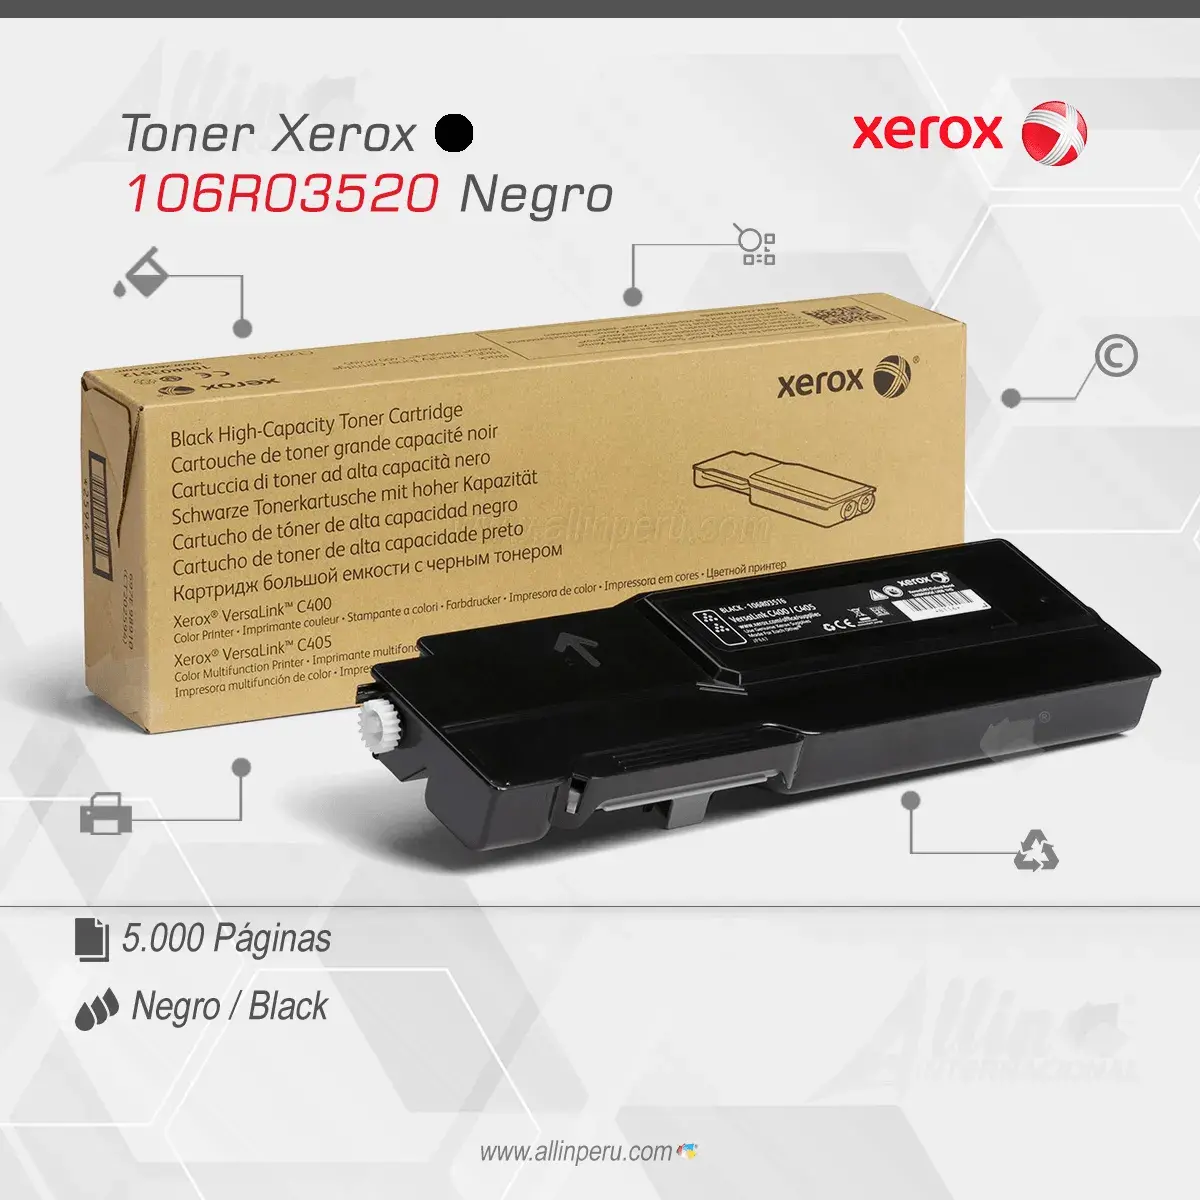 Tóner Xerox 106R03520 este cartucho está hecho para impresoras VersaLink C400